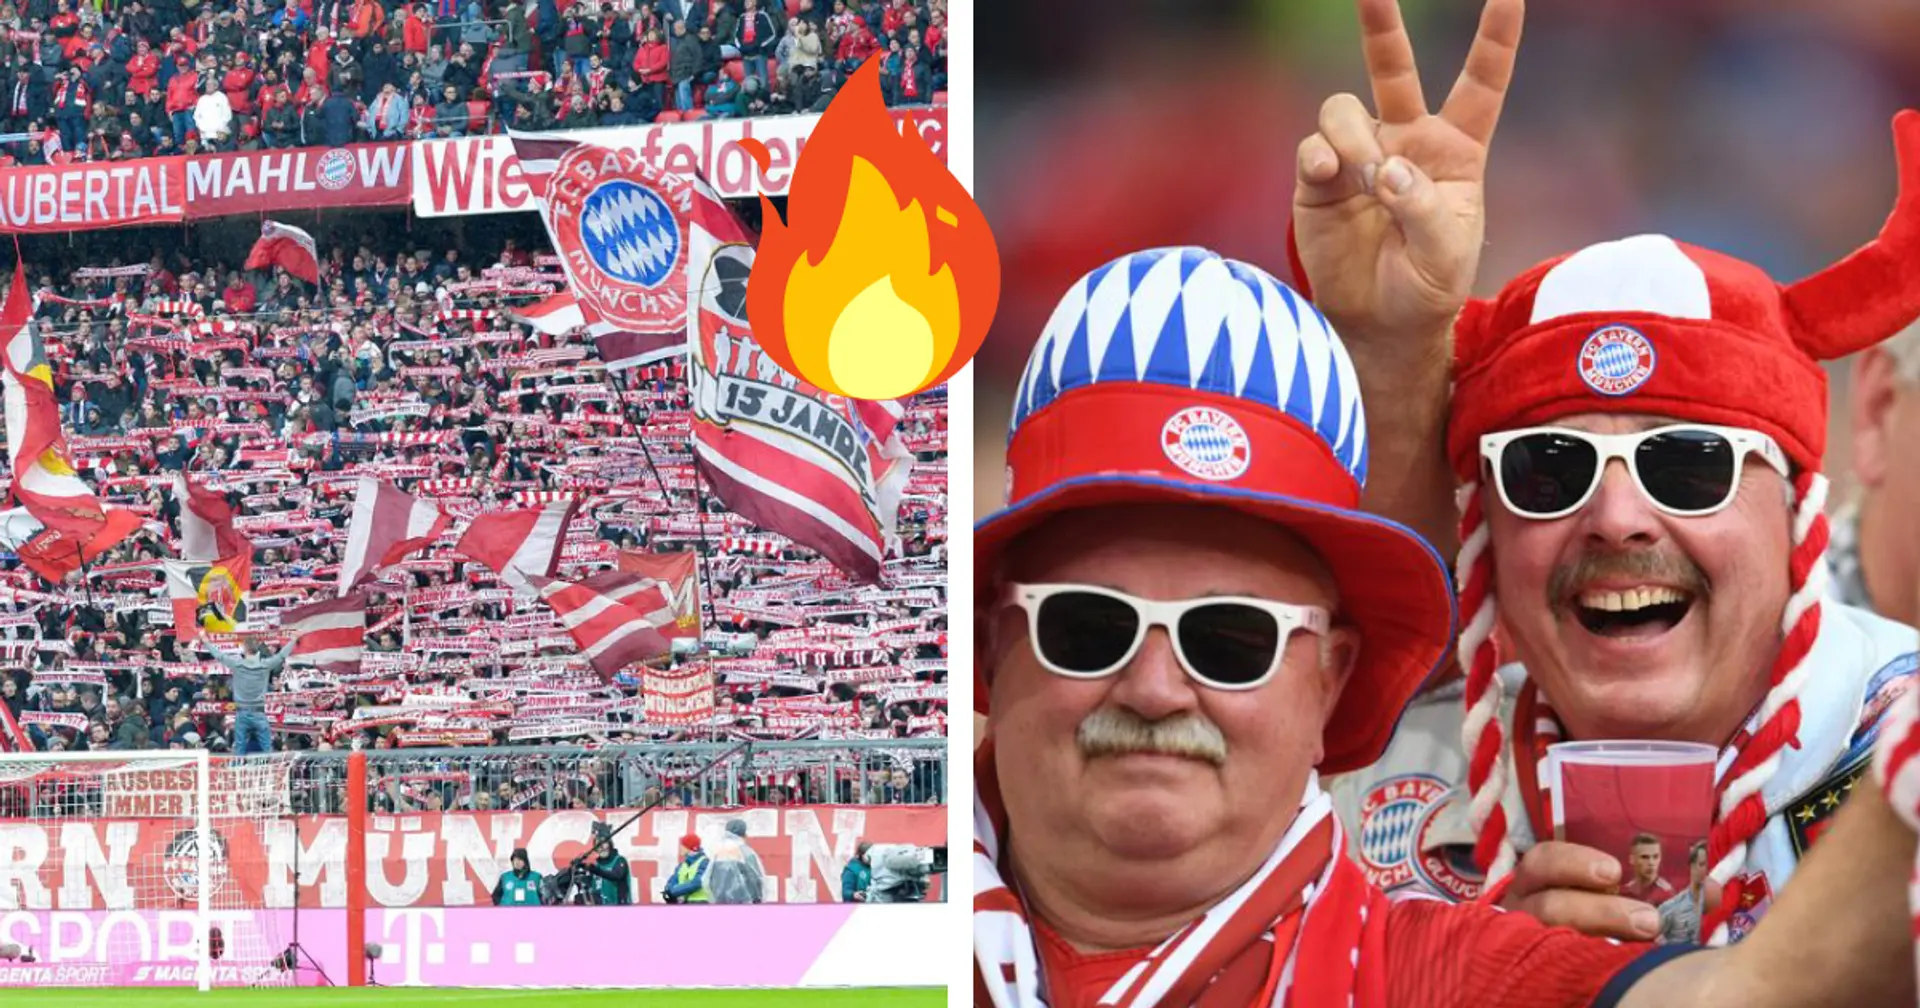 Mitgliederzahlen der Bundesligisten: Bayern bleibt an der Spitze mit riesigem Vorsprung vor Dortmund